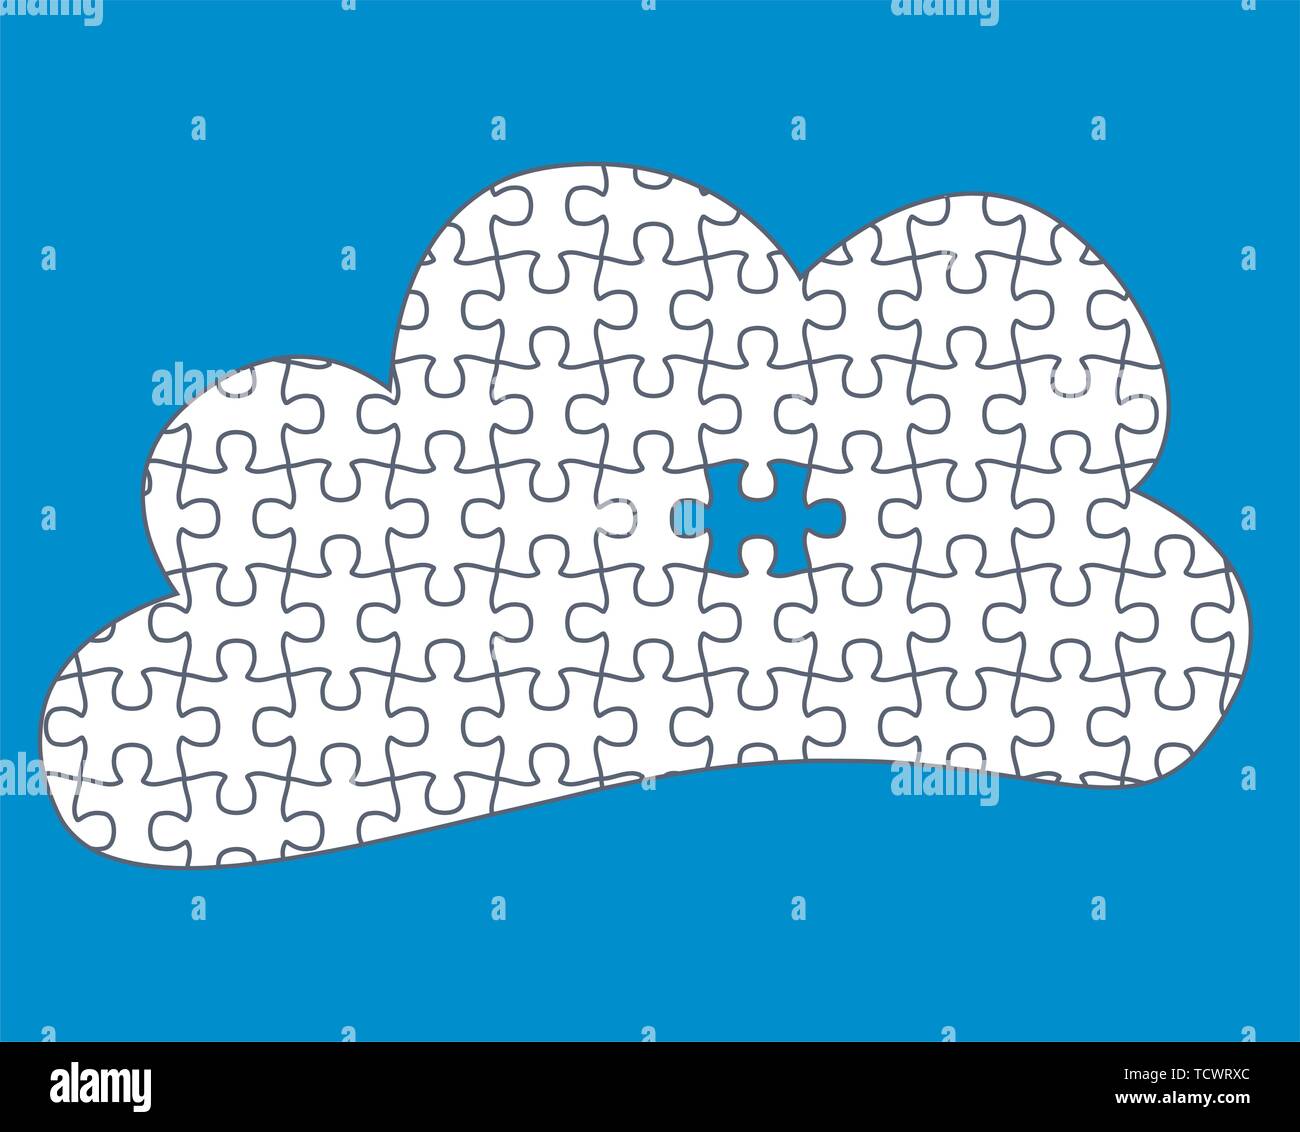 Le Cloud Computing une pièce manquante - pièces de puzzle sont des pièces séparées Illustration de Vecteur